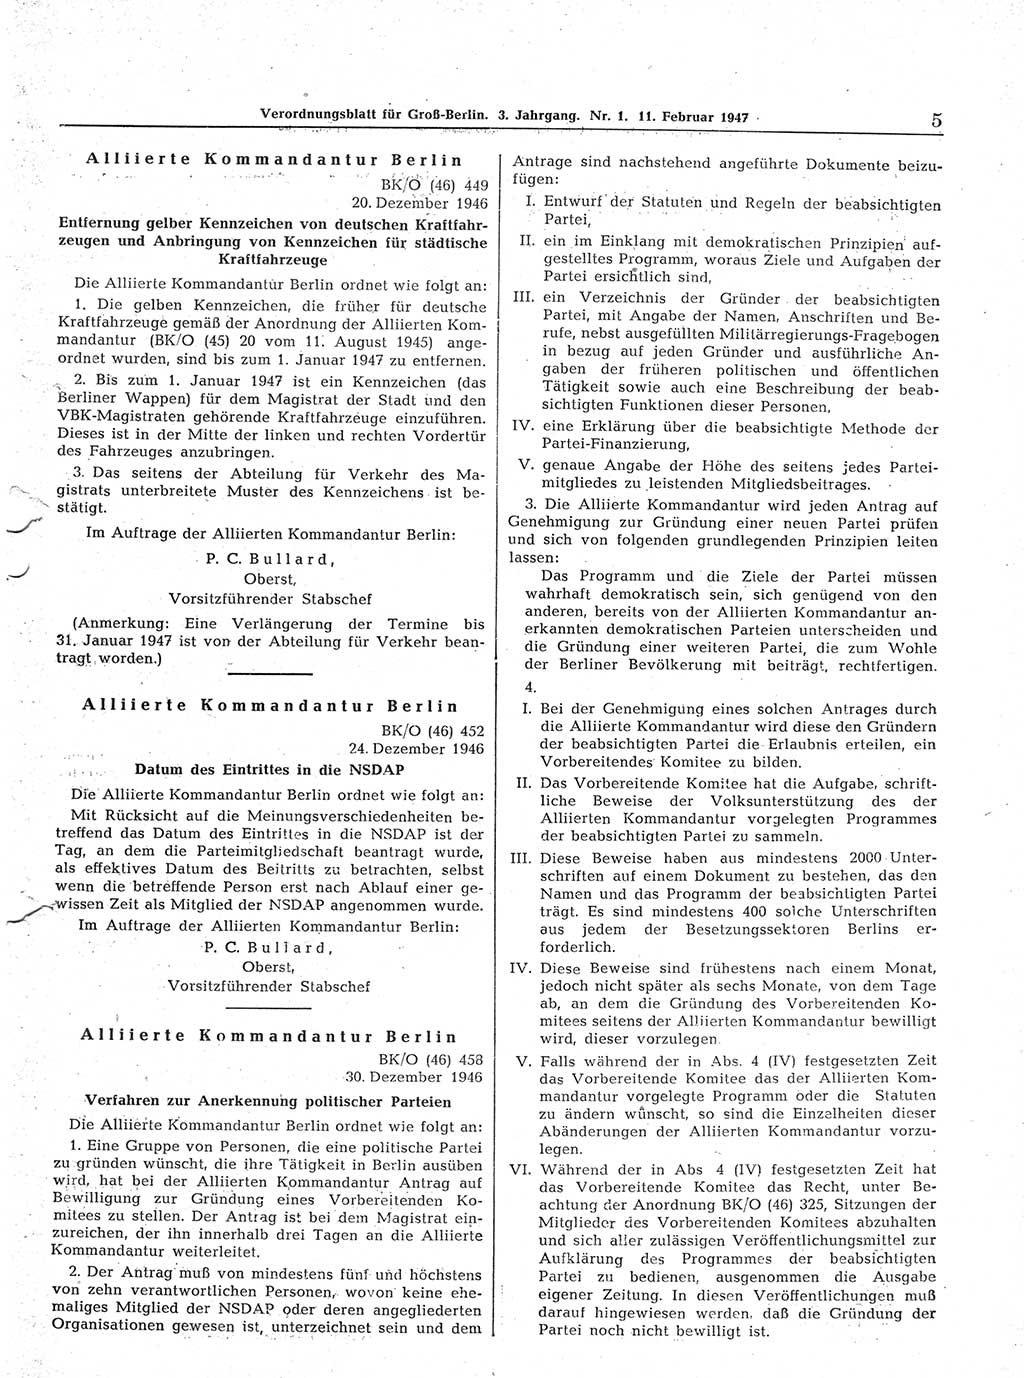 Verordnungsblatt (VOBl.) für Groß-Berlin 1947, Seite 5 (VOBl. Bln. 1947, S. 5)